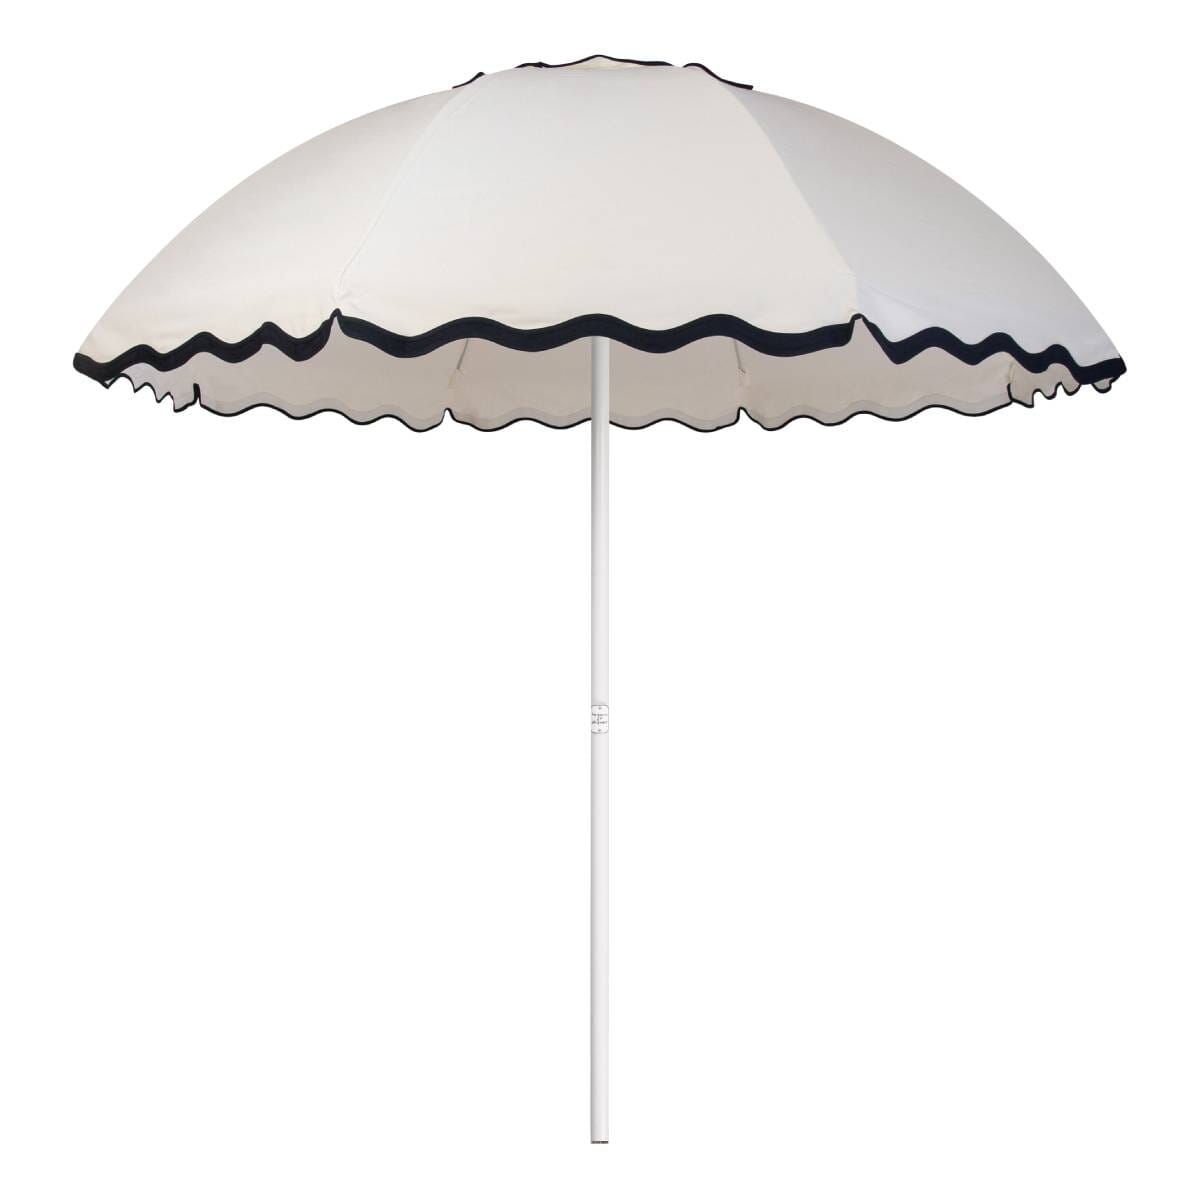 The Patio Umbrella - Rivie White Patio Umbrella Business & Pleasure Co Aus 